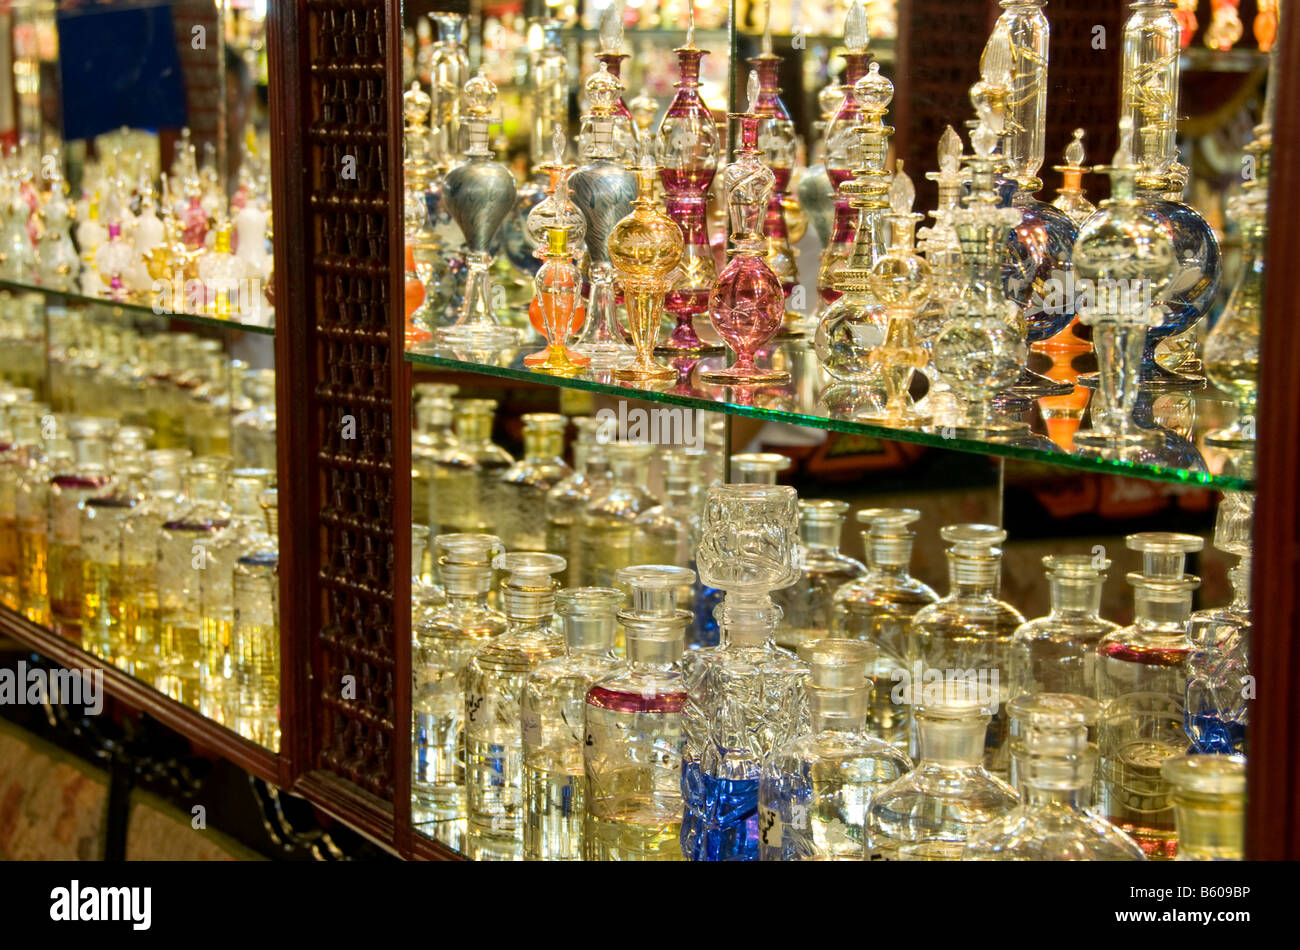 Duft und Parfüm Gläser Shop Regal, Hurghada, Ägypten Stockfotografie - Alamy